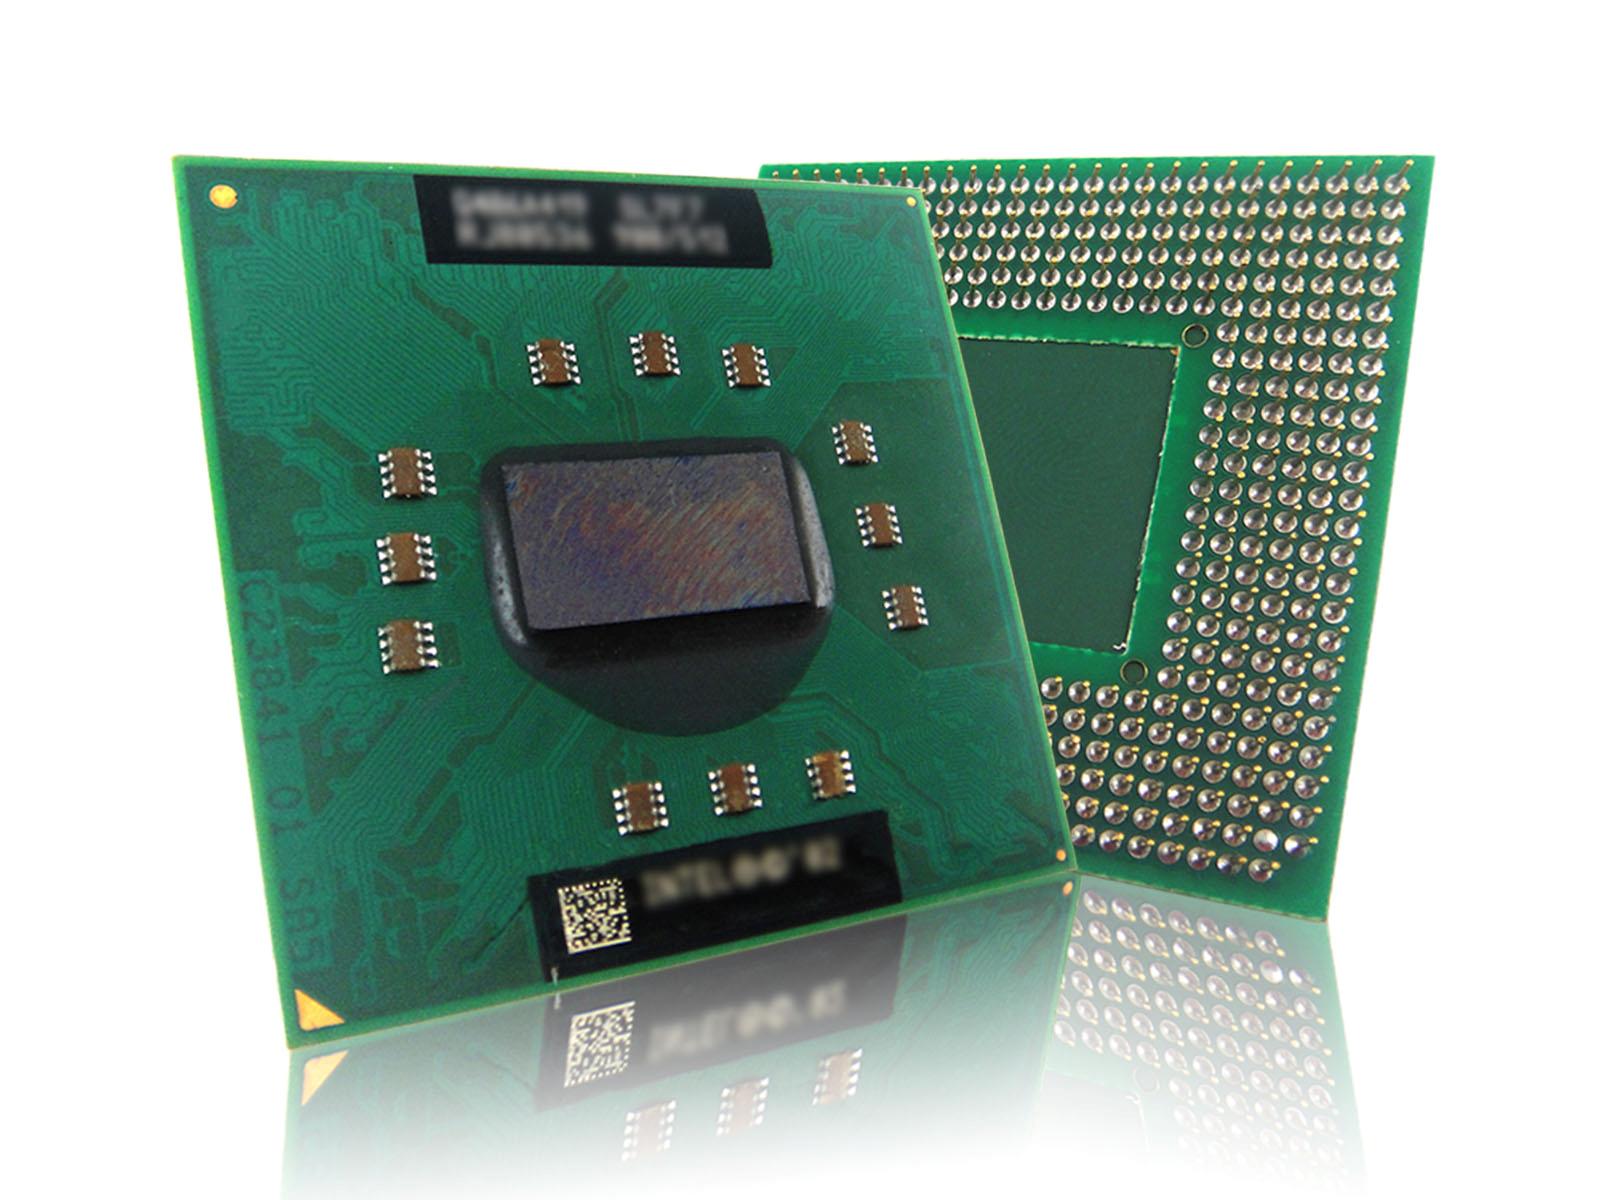 Pentium M 1.7G